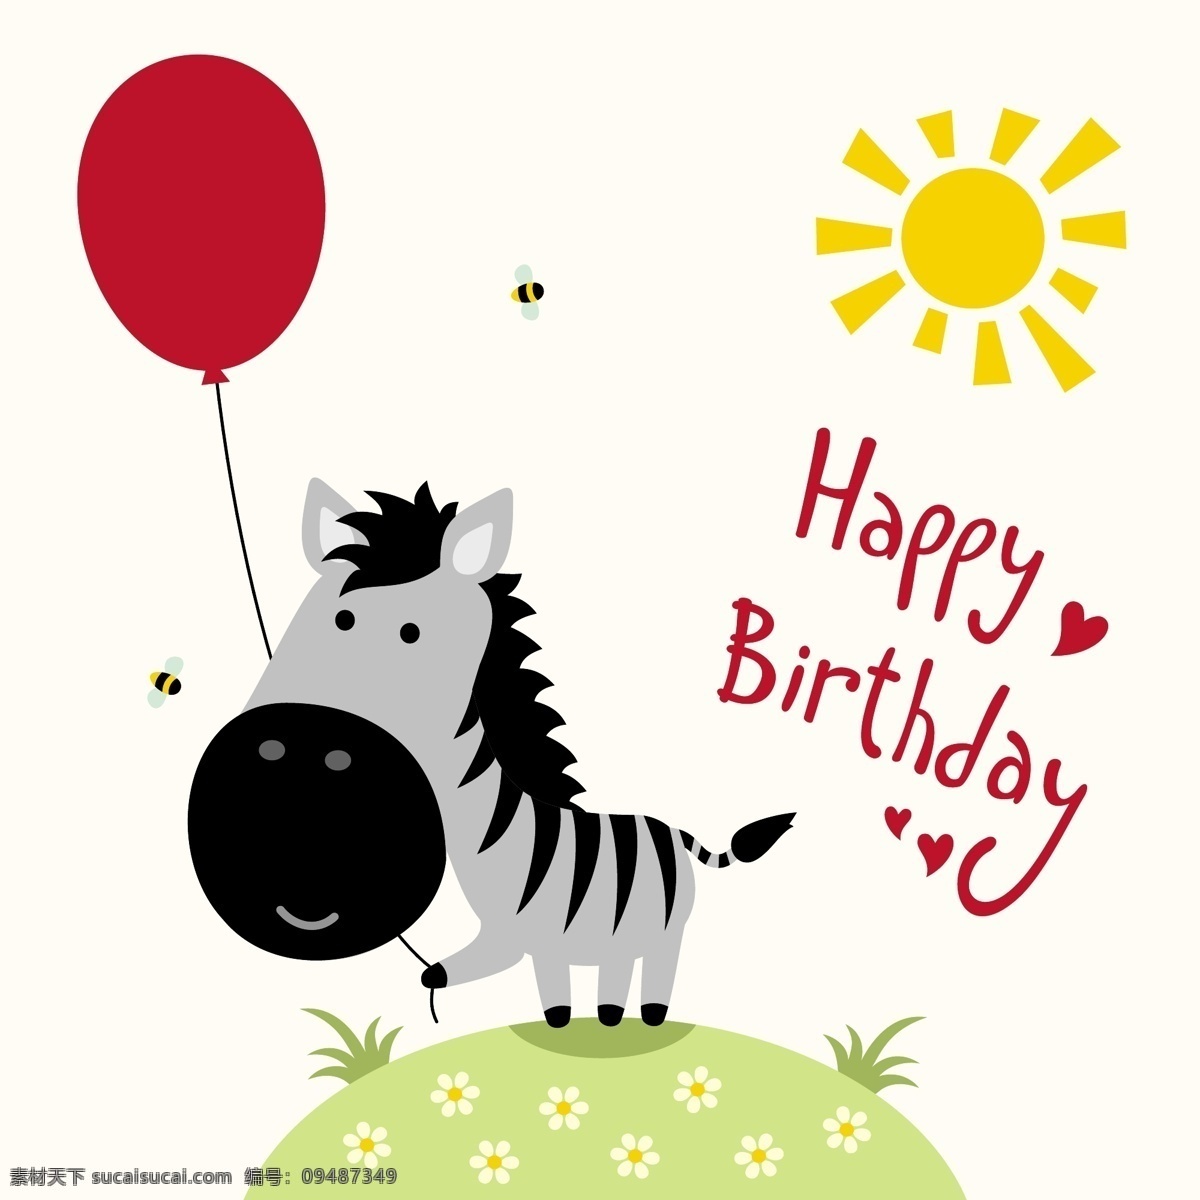 卡通 生日 动物图片 气球 太阳 蜜蜂 动物 卡通图画 生日快乐 矢量 高清图片